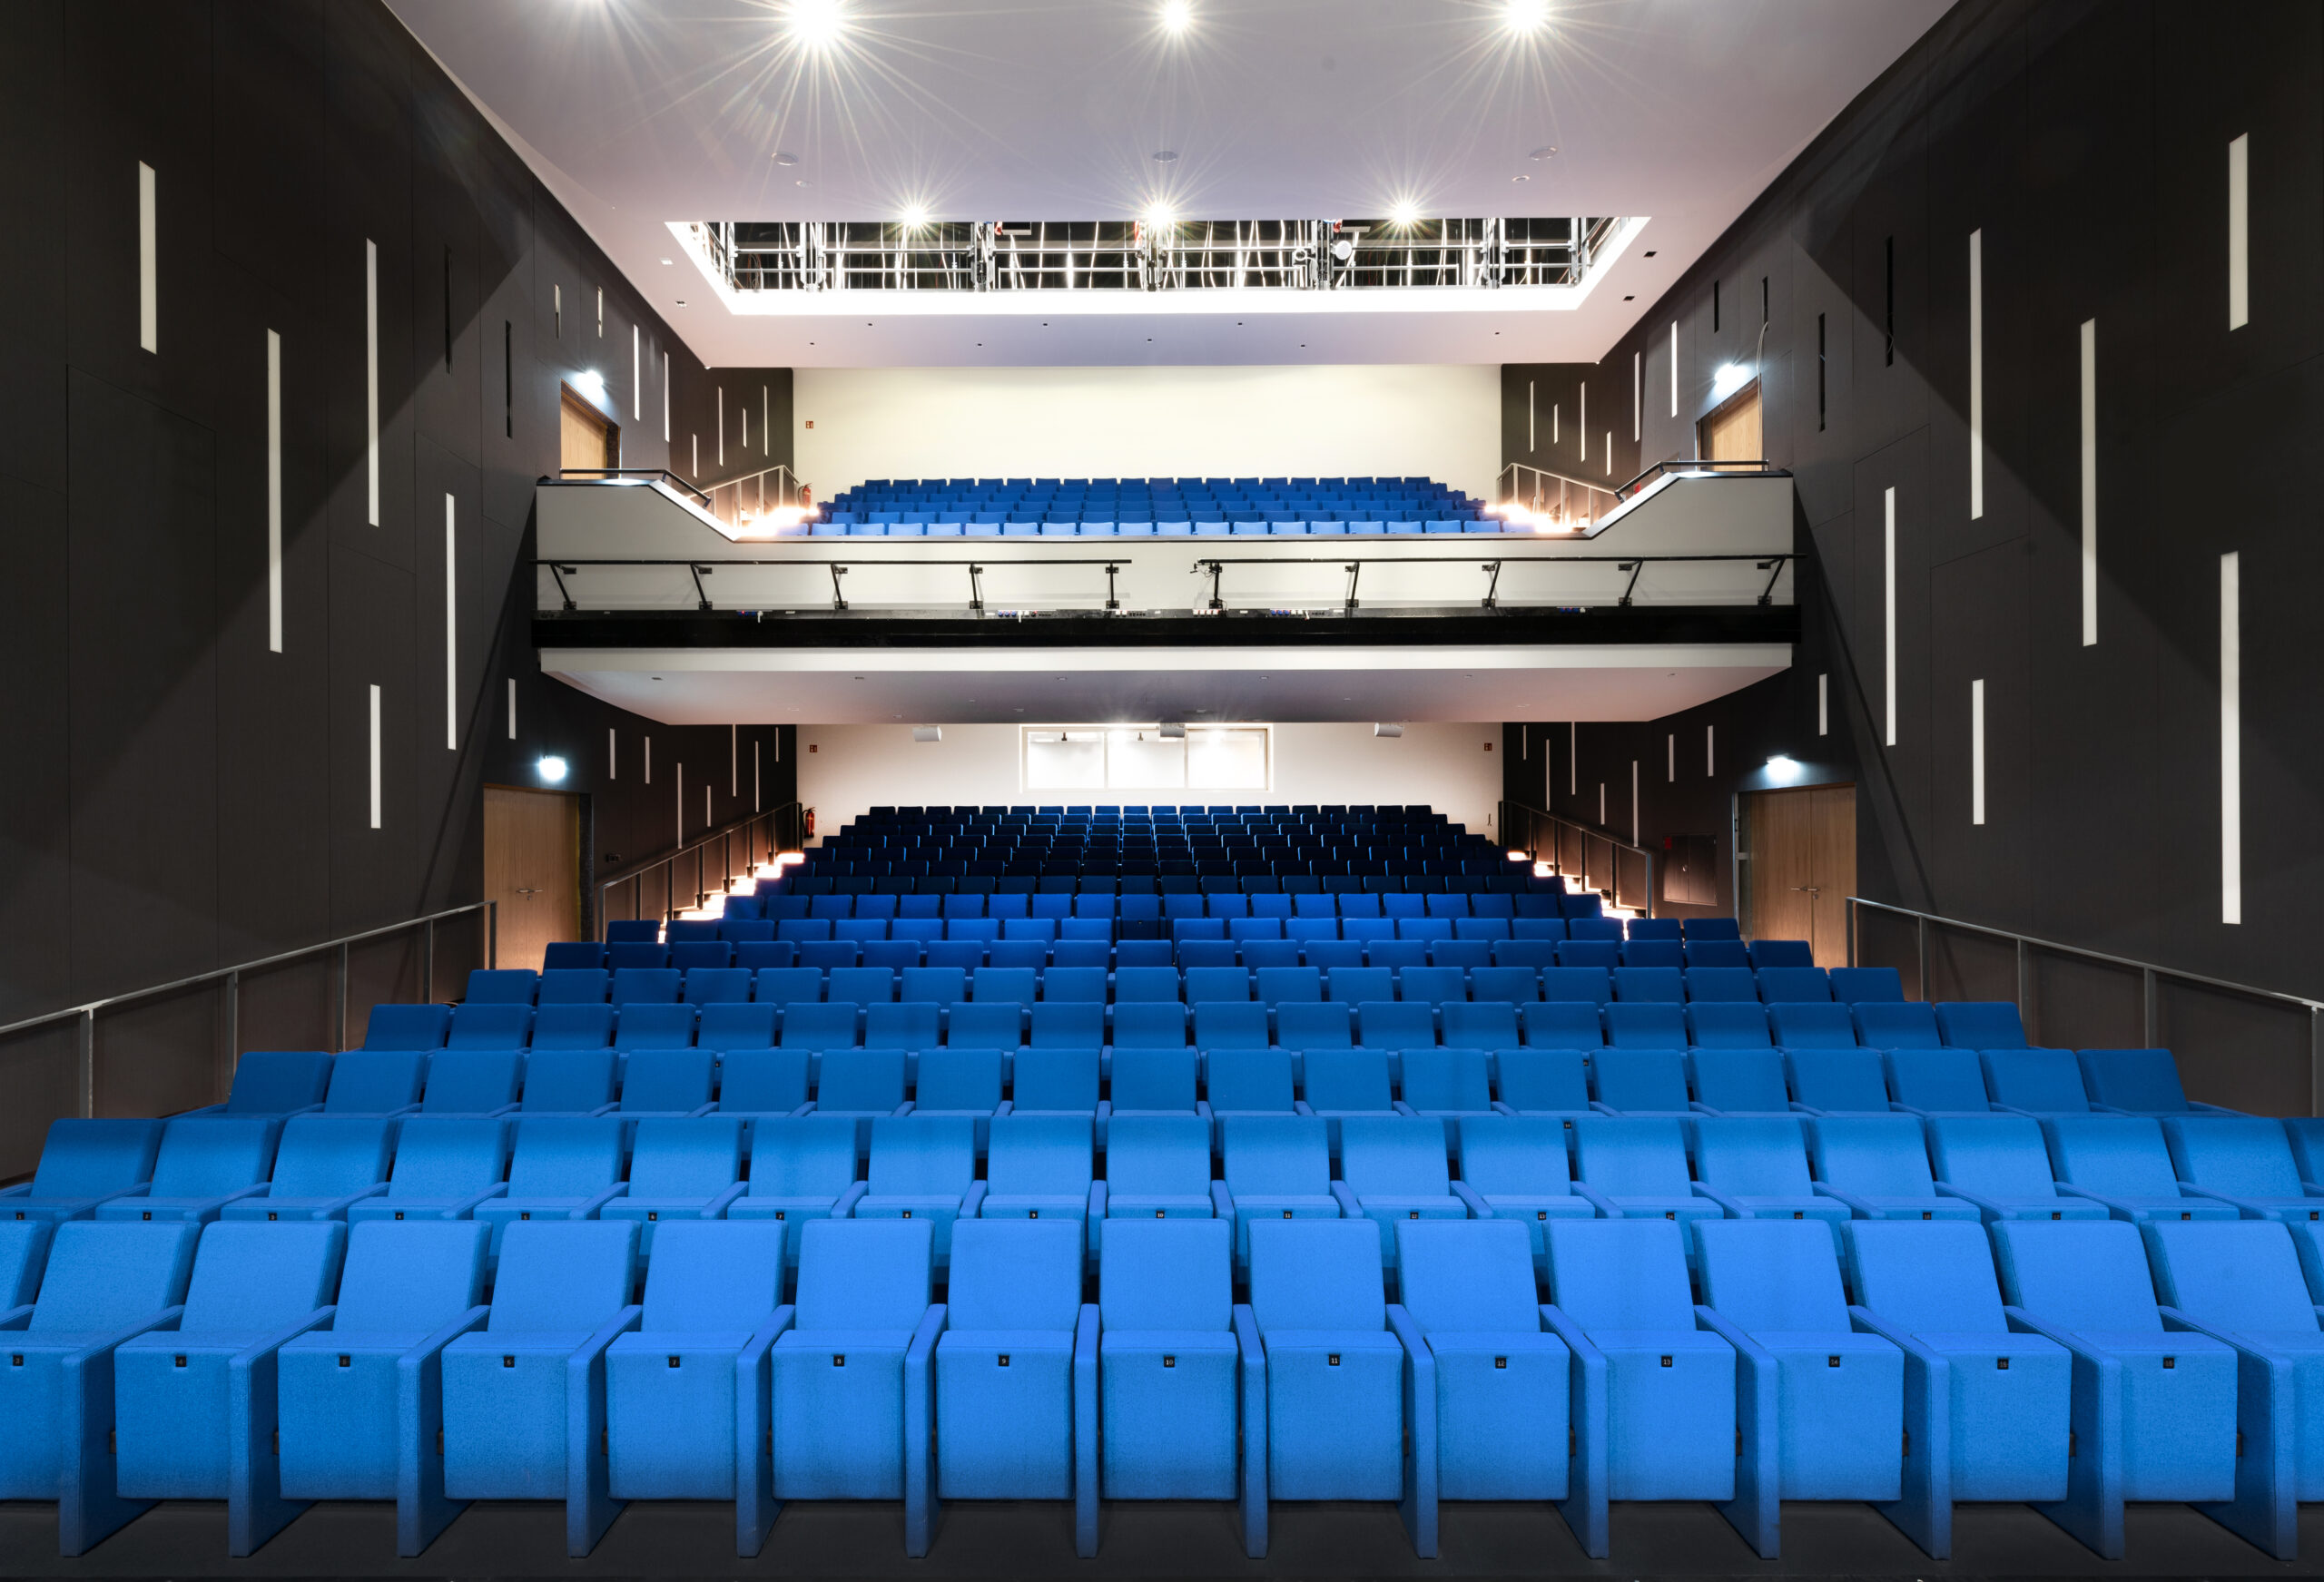 Theatersaal von der Bühne aus fotografiert. Die Sitze sind blau überzogen.